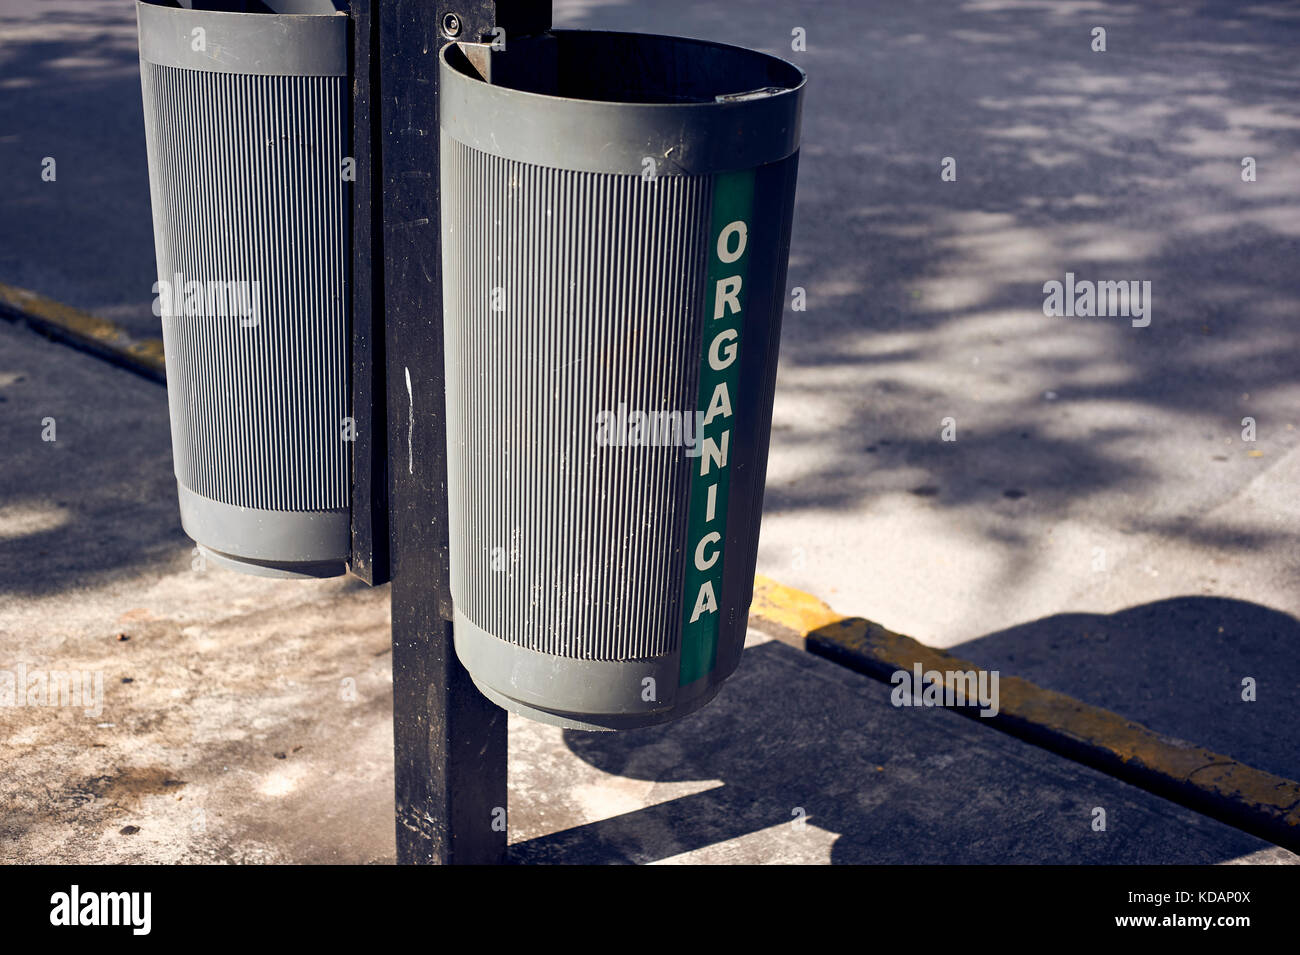 Bote de basura inorganico fotografías e imágenes de alta resolución - Alamy